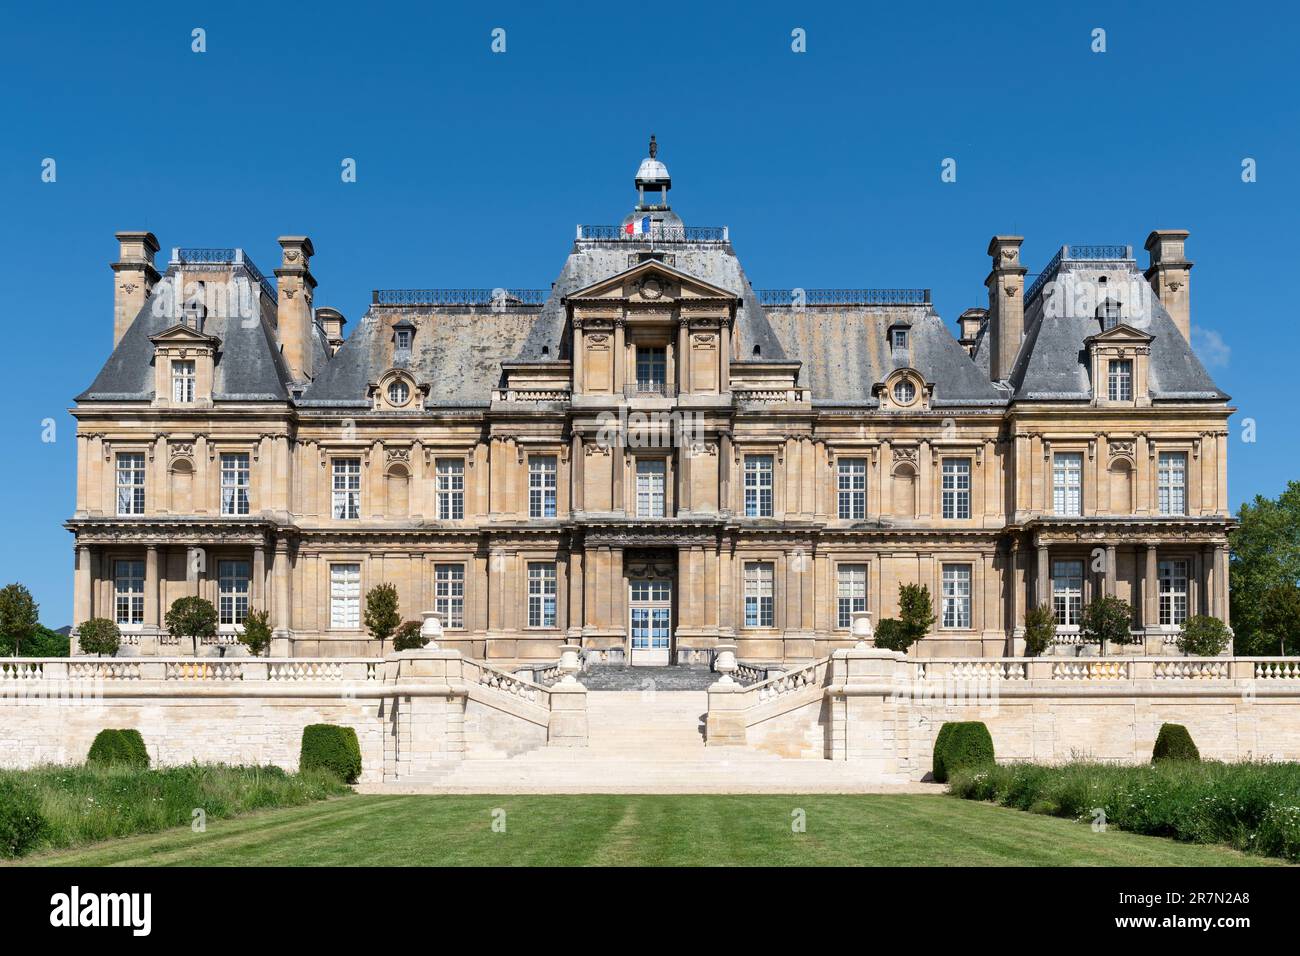 Château historique de Maisons Laffitte, près de Paris - France Banque D'Images